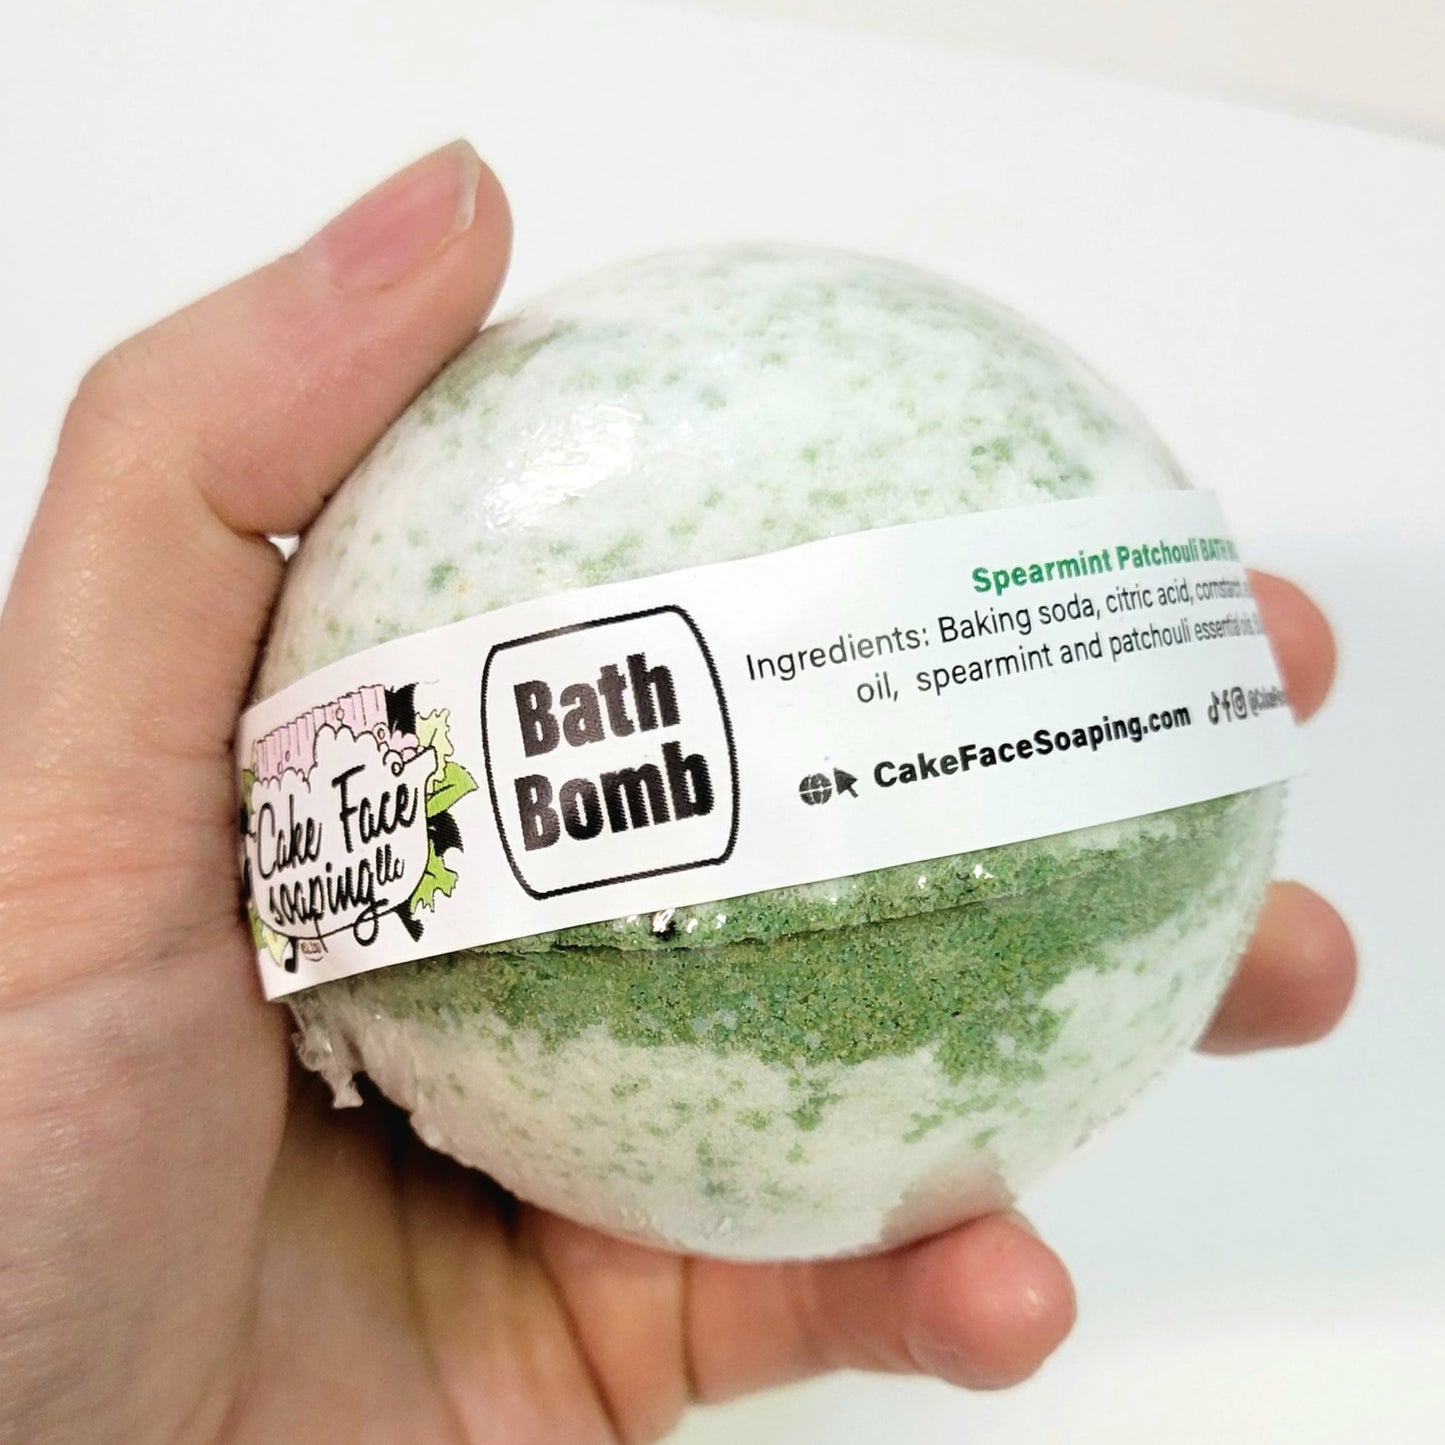 Bath Bomb - Spearmint Patchouli